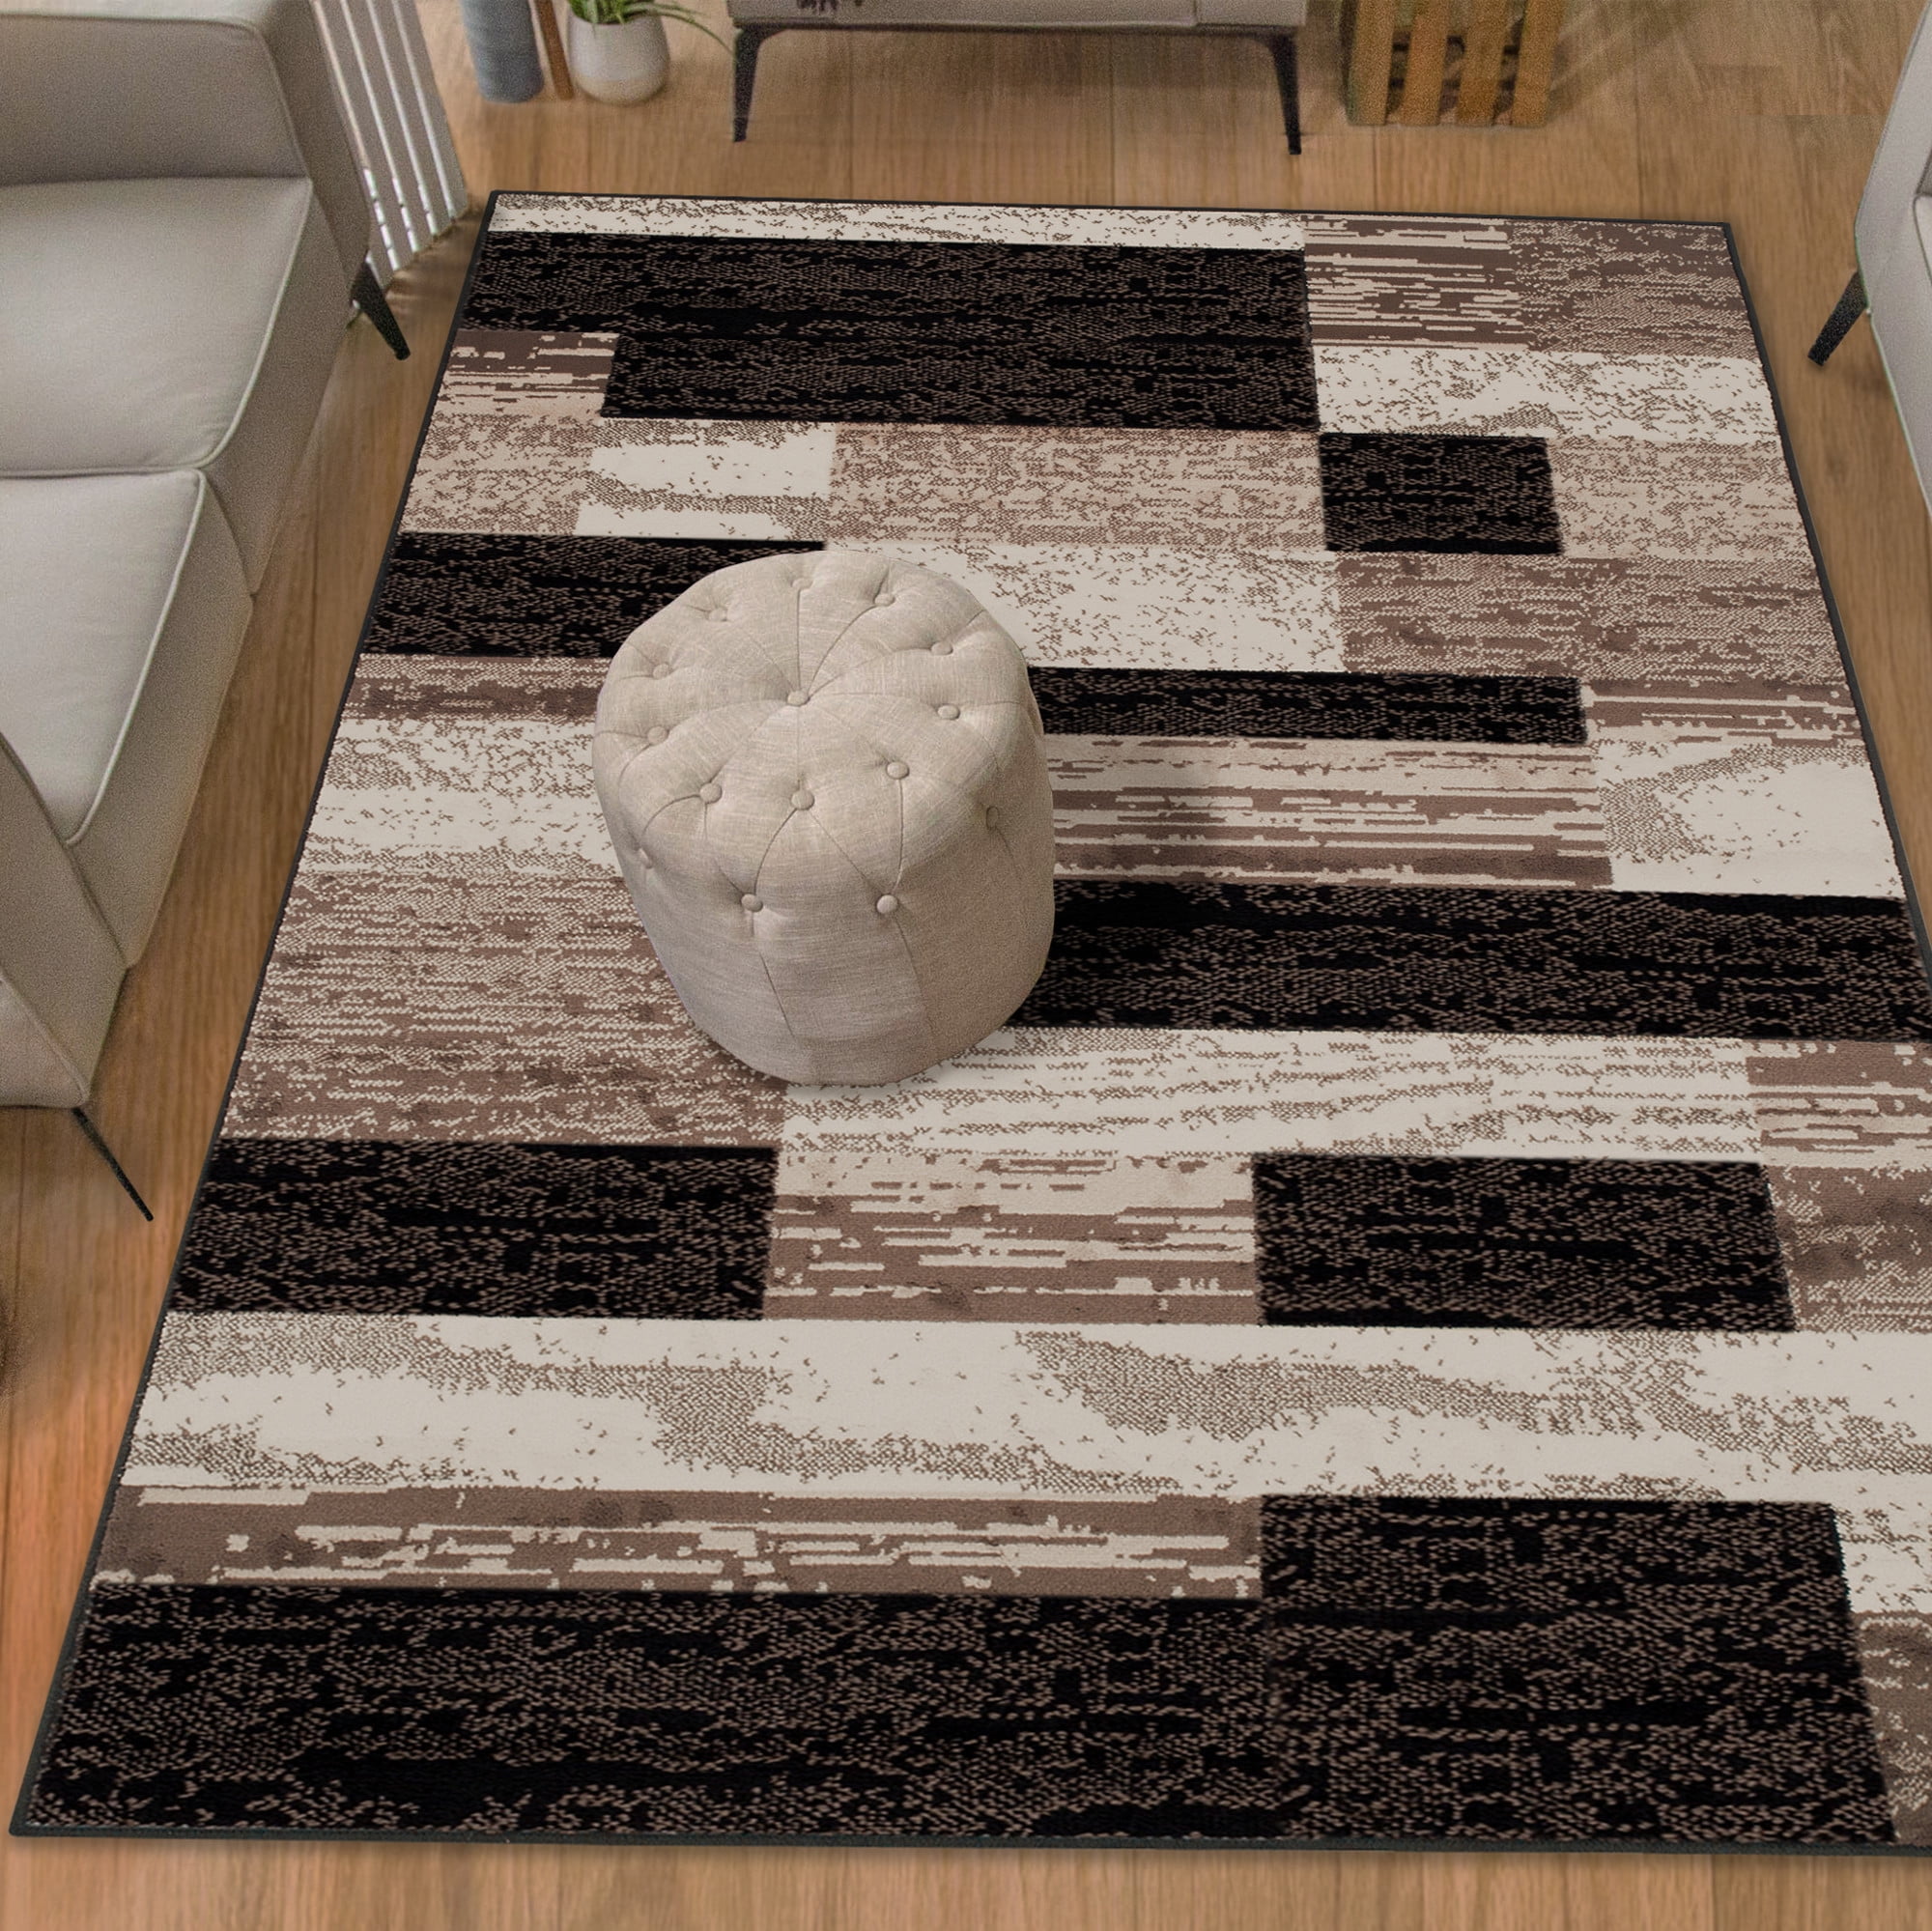 Contemporary Home Living 6' x 9' Beige Soft Sheep Skin-Designed Rectangular Area Throw Rug 